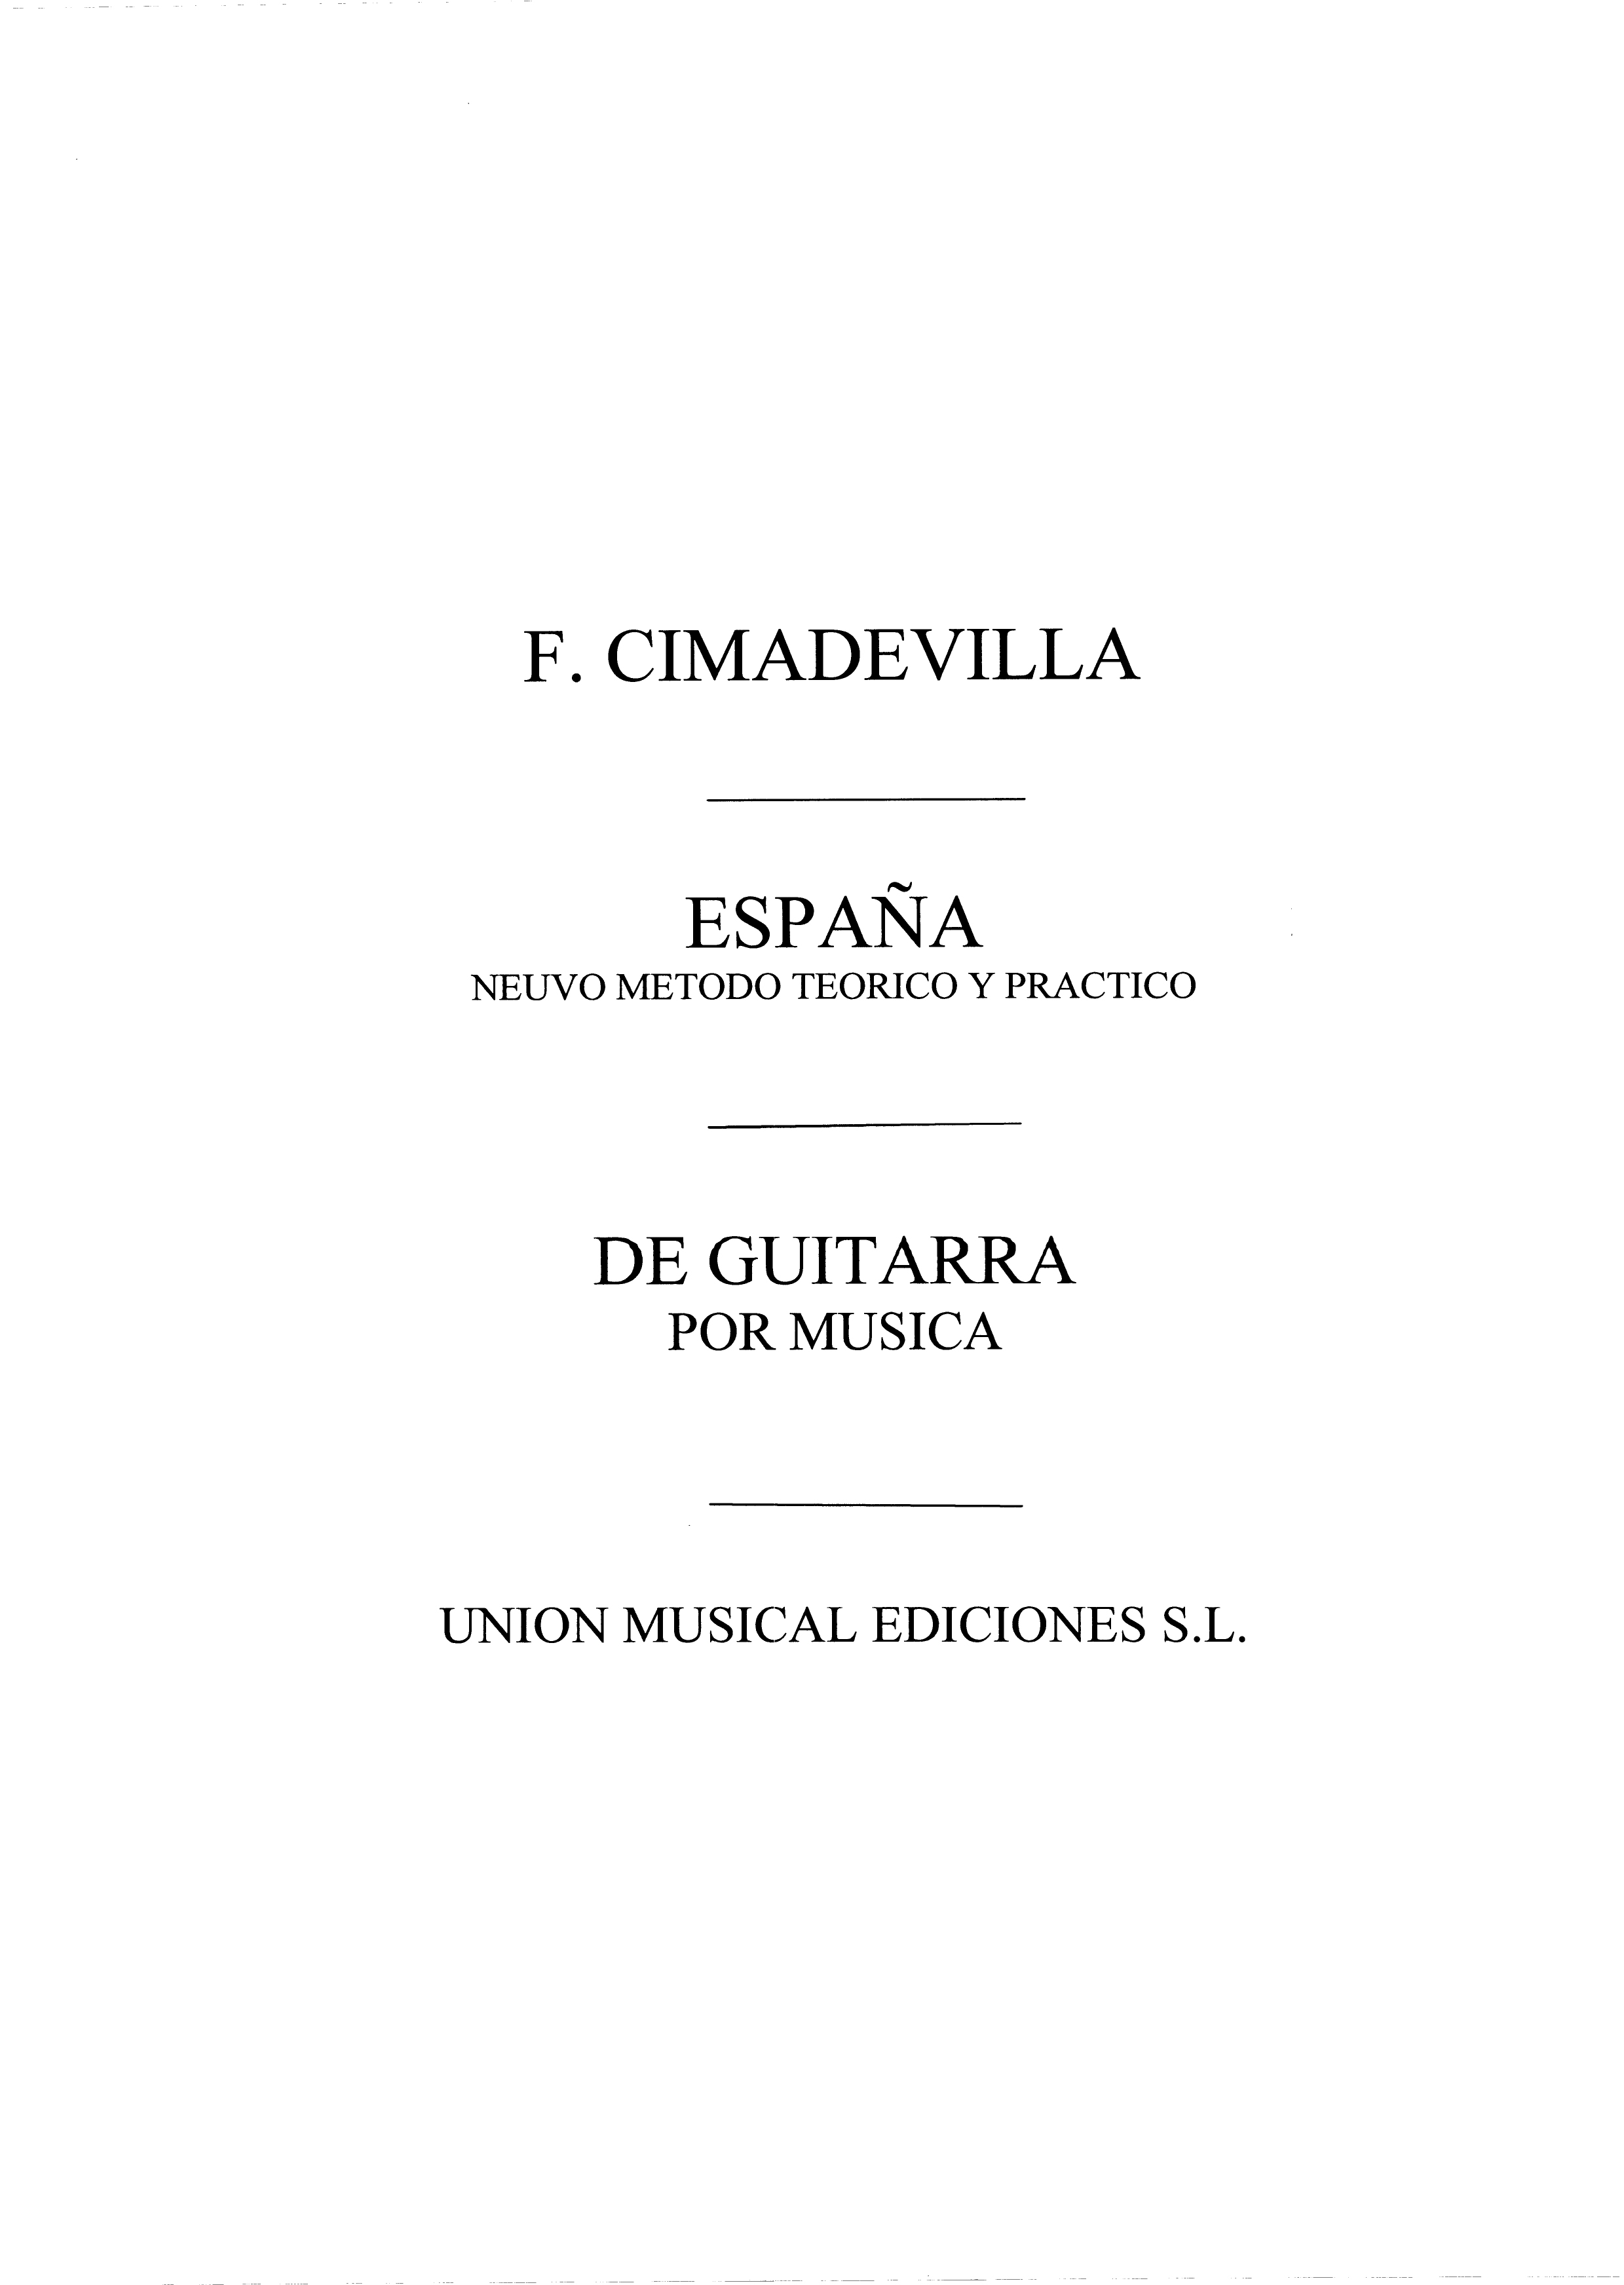 Cimadevilla: Espana Nuevo Metodo Teorico Y Practico De Guitar